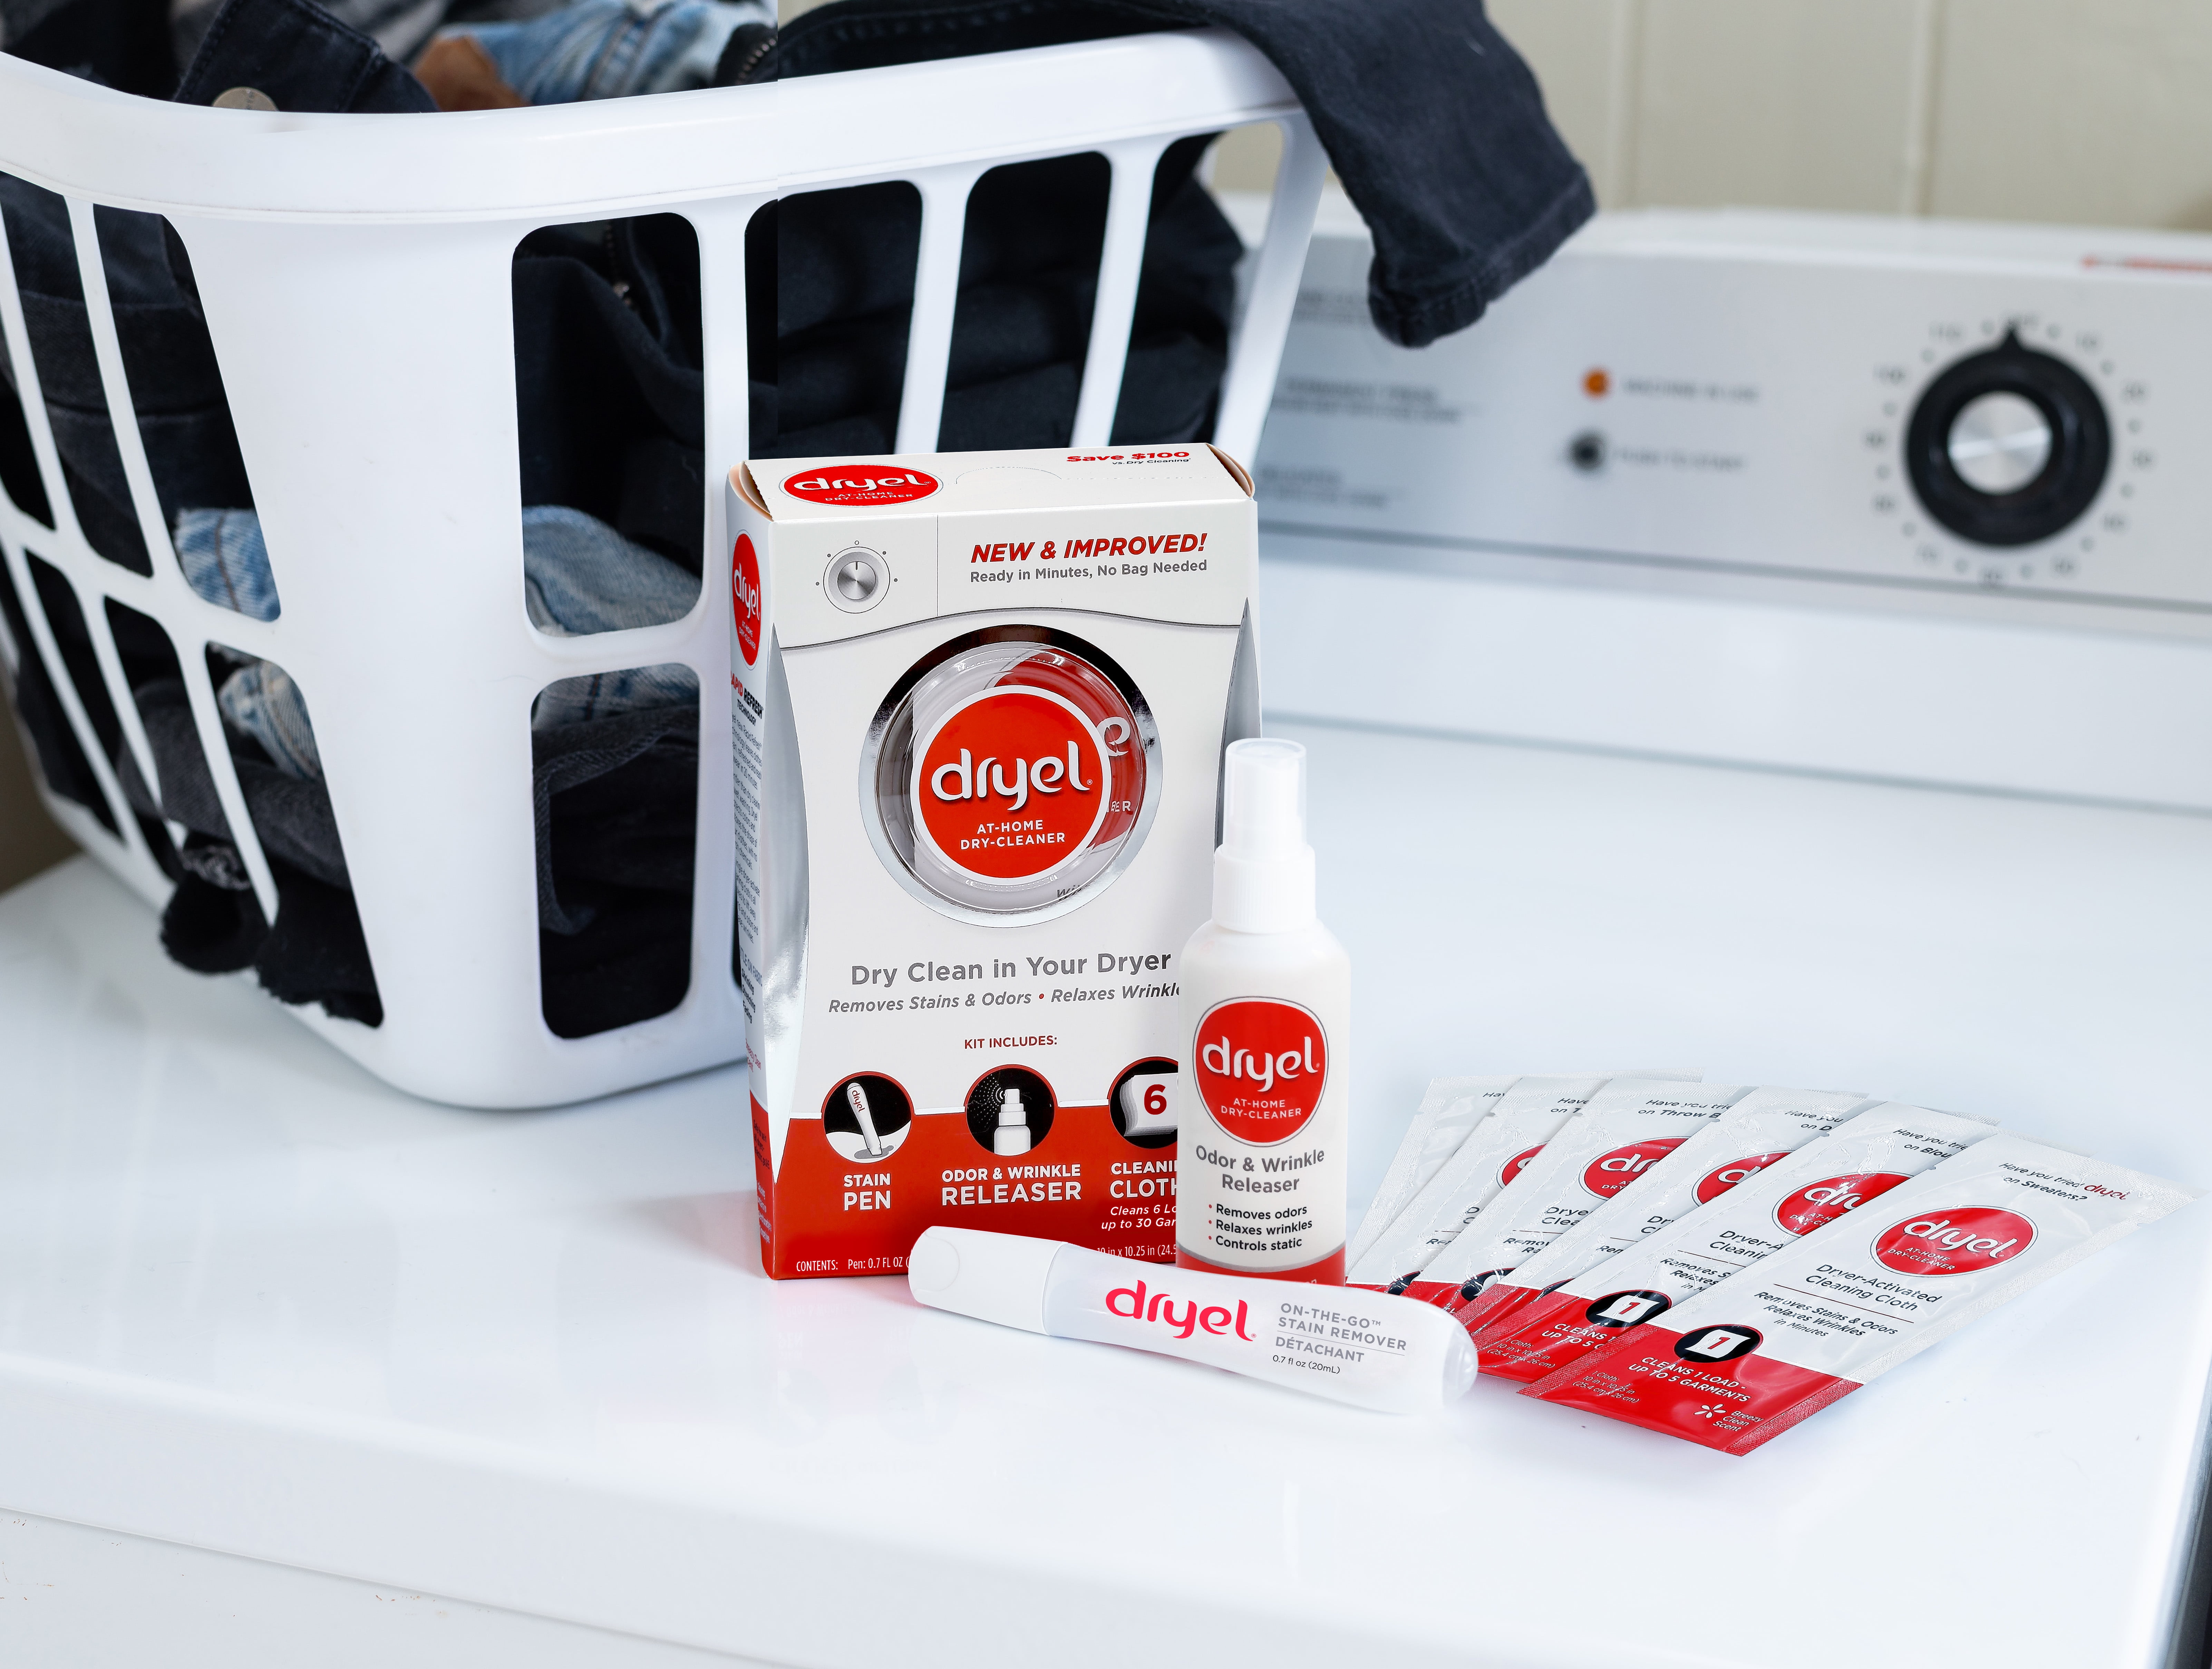 Dryel At Home Dry Cleaner Starter Kit - Dazey's Supply